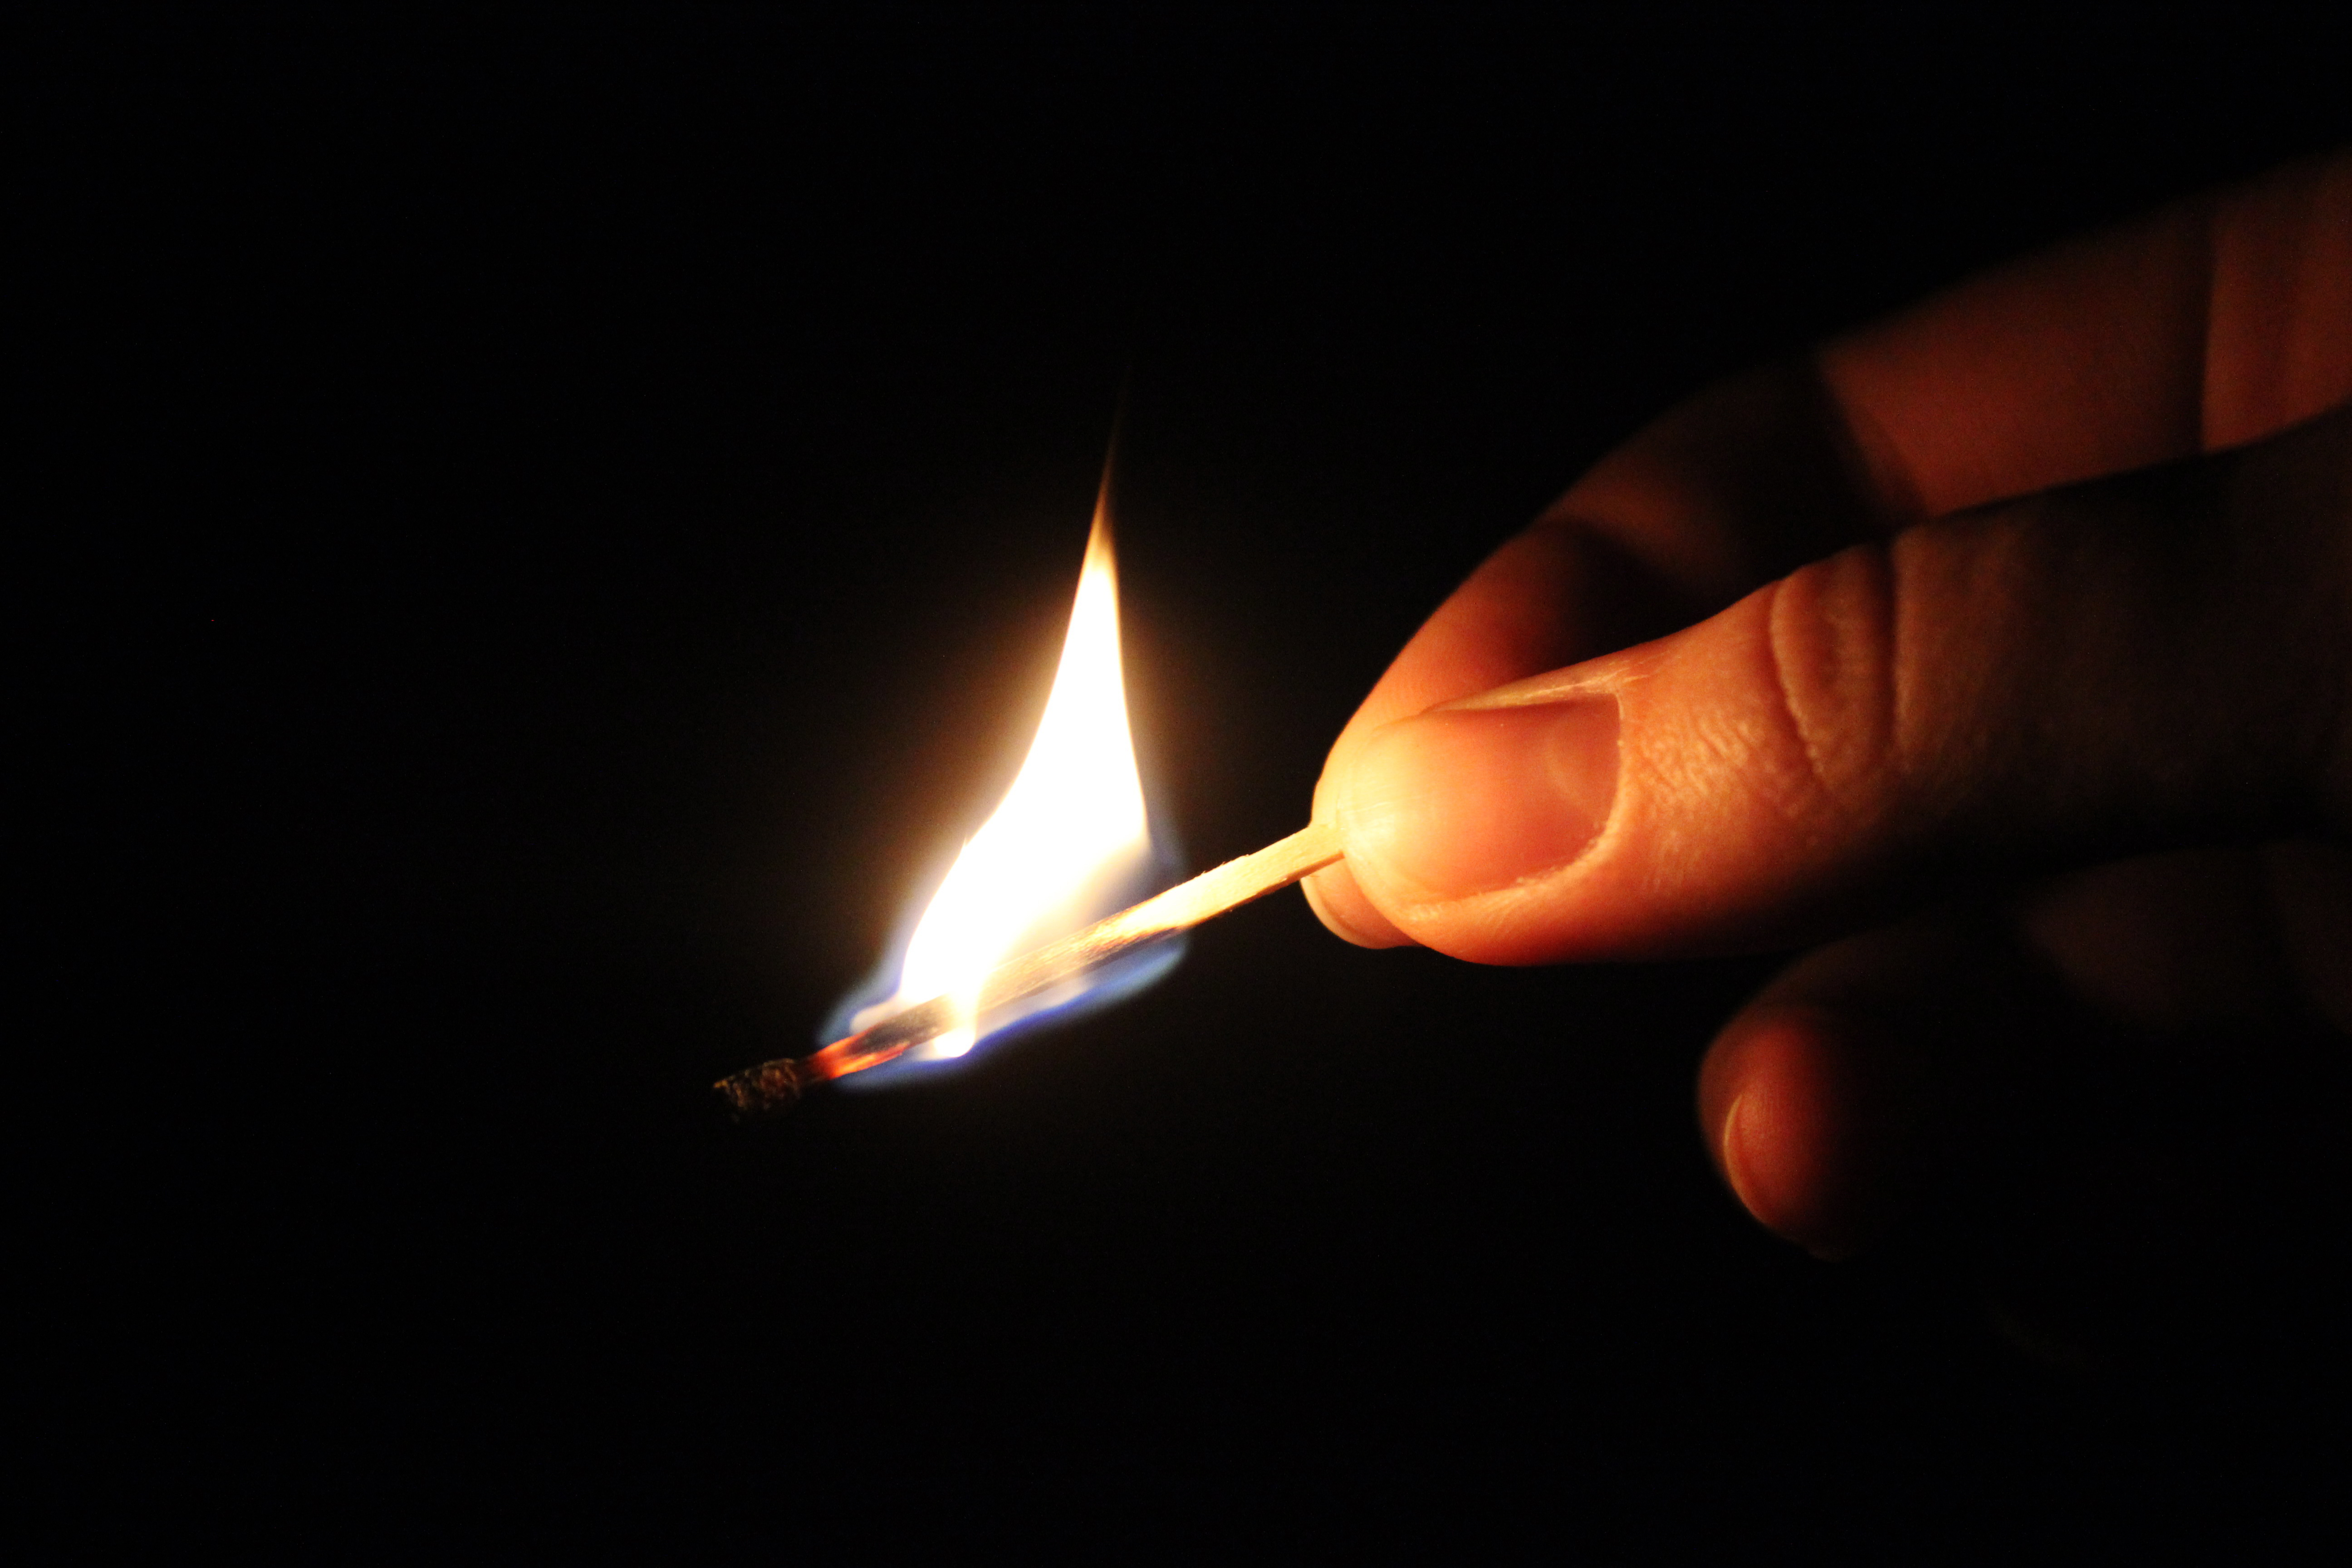 File:Burning match.jpg - Wikimedia Commons